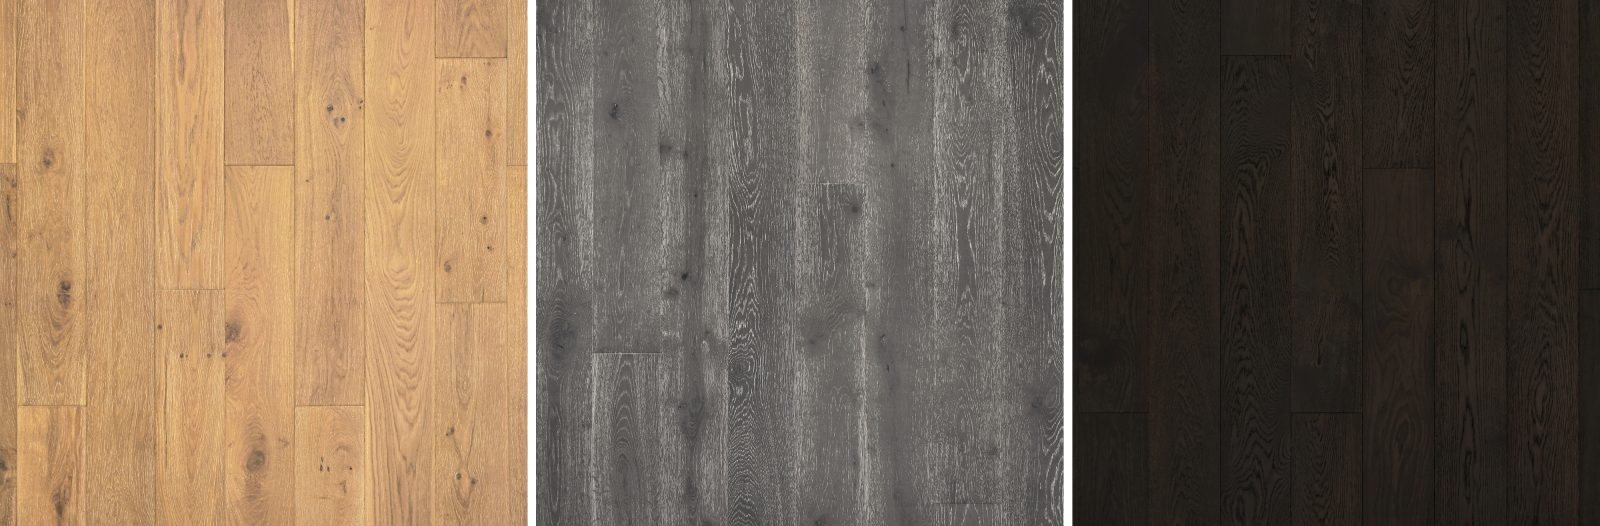 Comparison of European Oak Hardwood Flooring